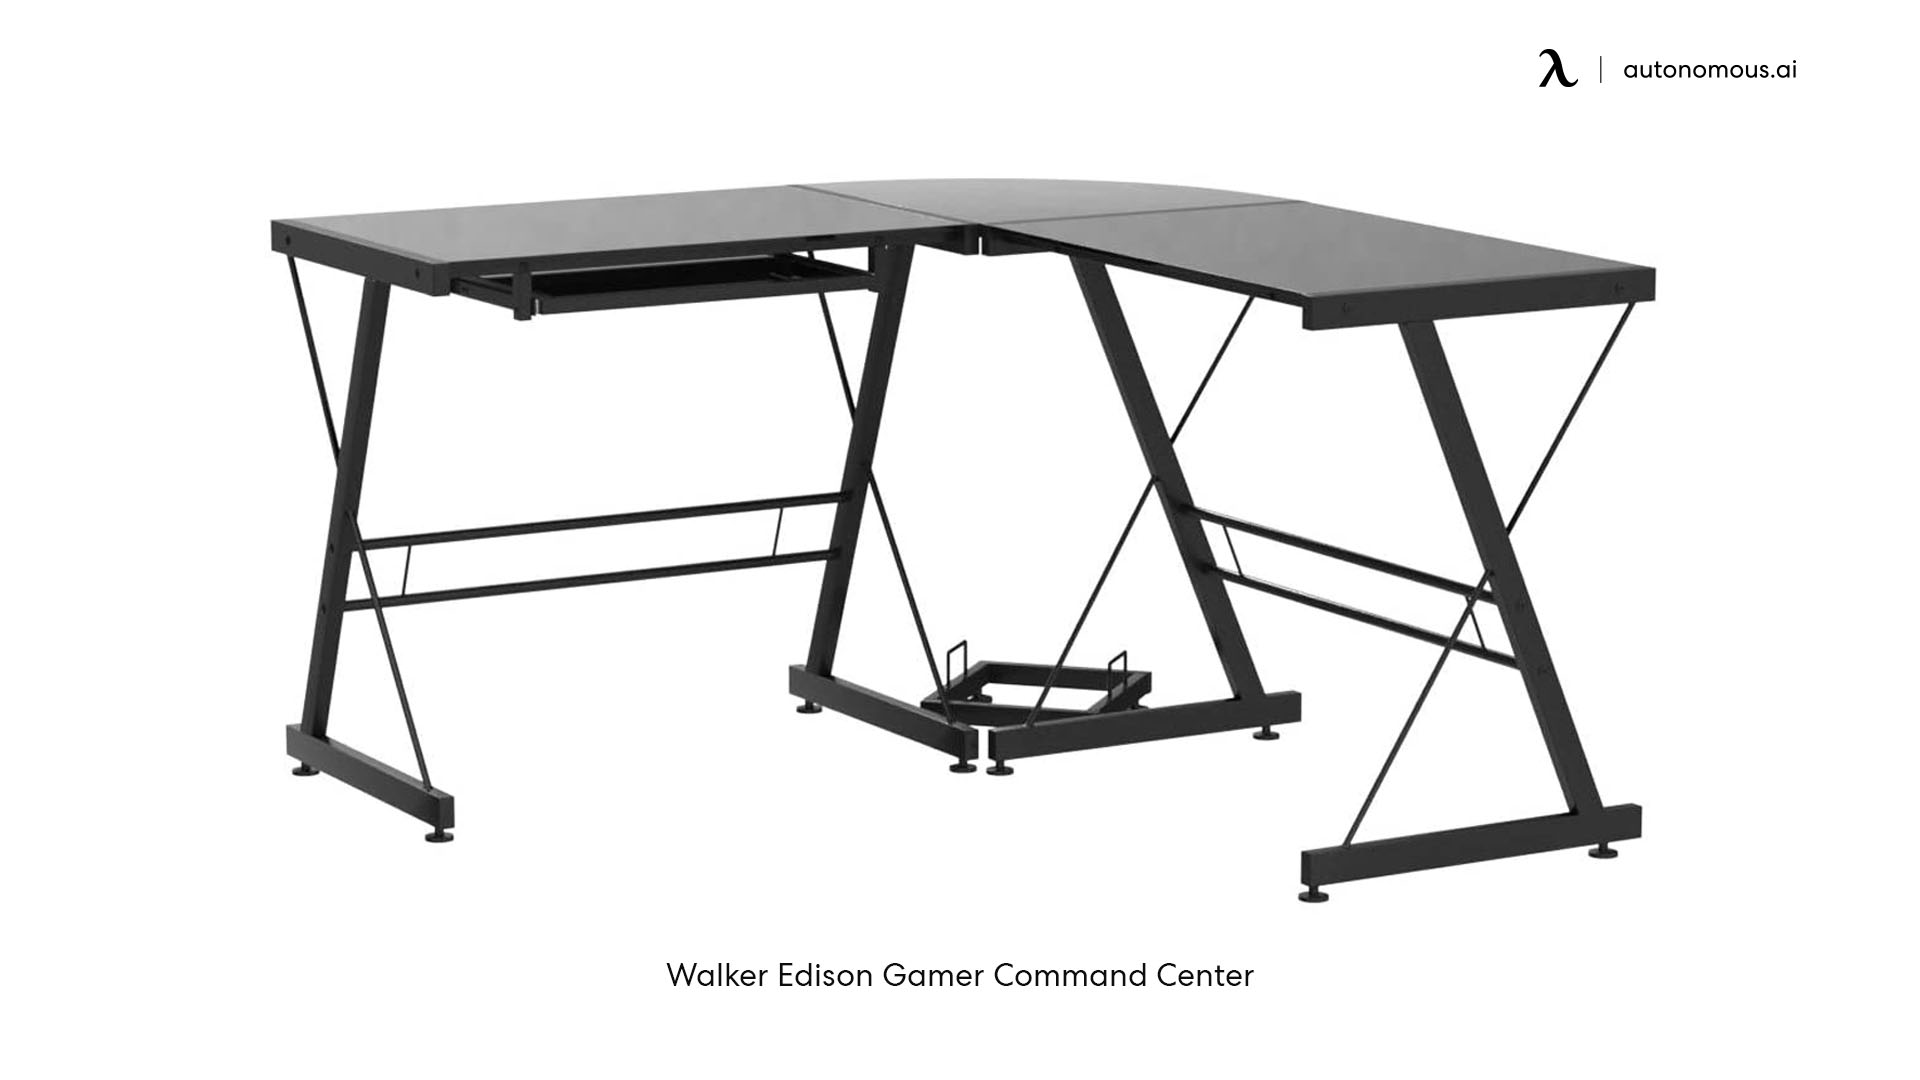 Walker Edison Gamer Command Center